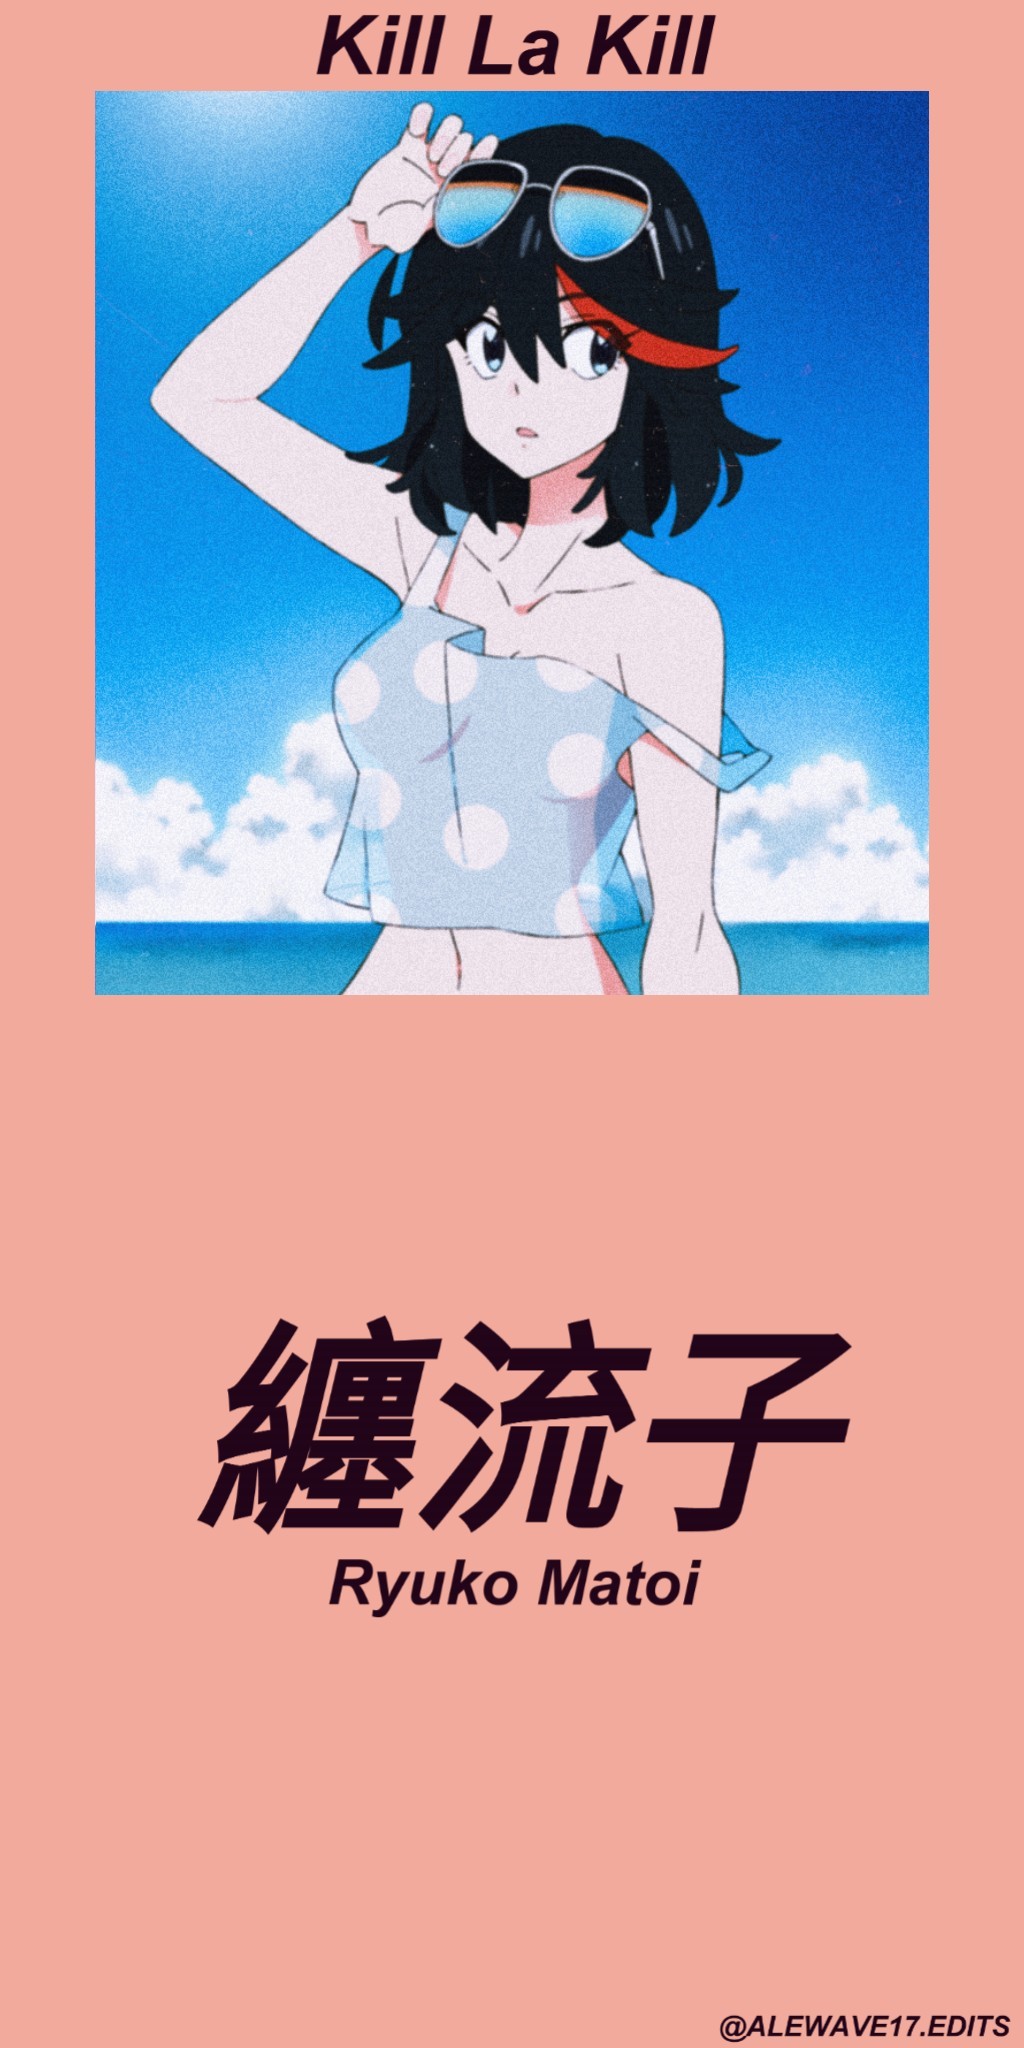 Aesthetic anime girl wallpaper for phone. - VHS